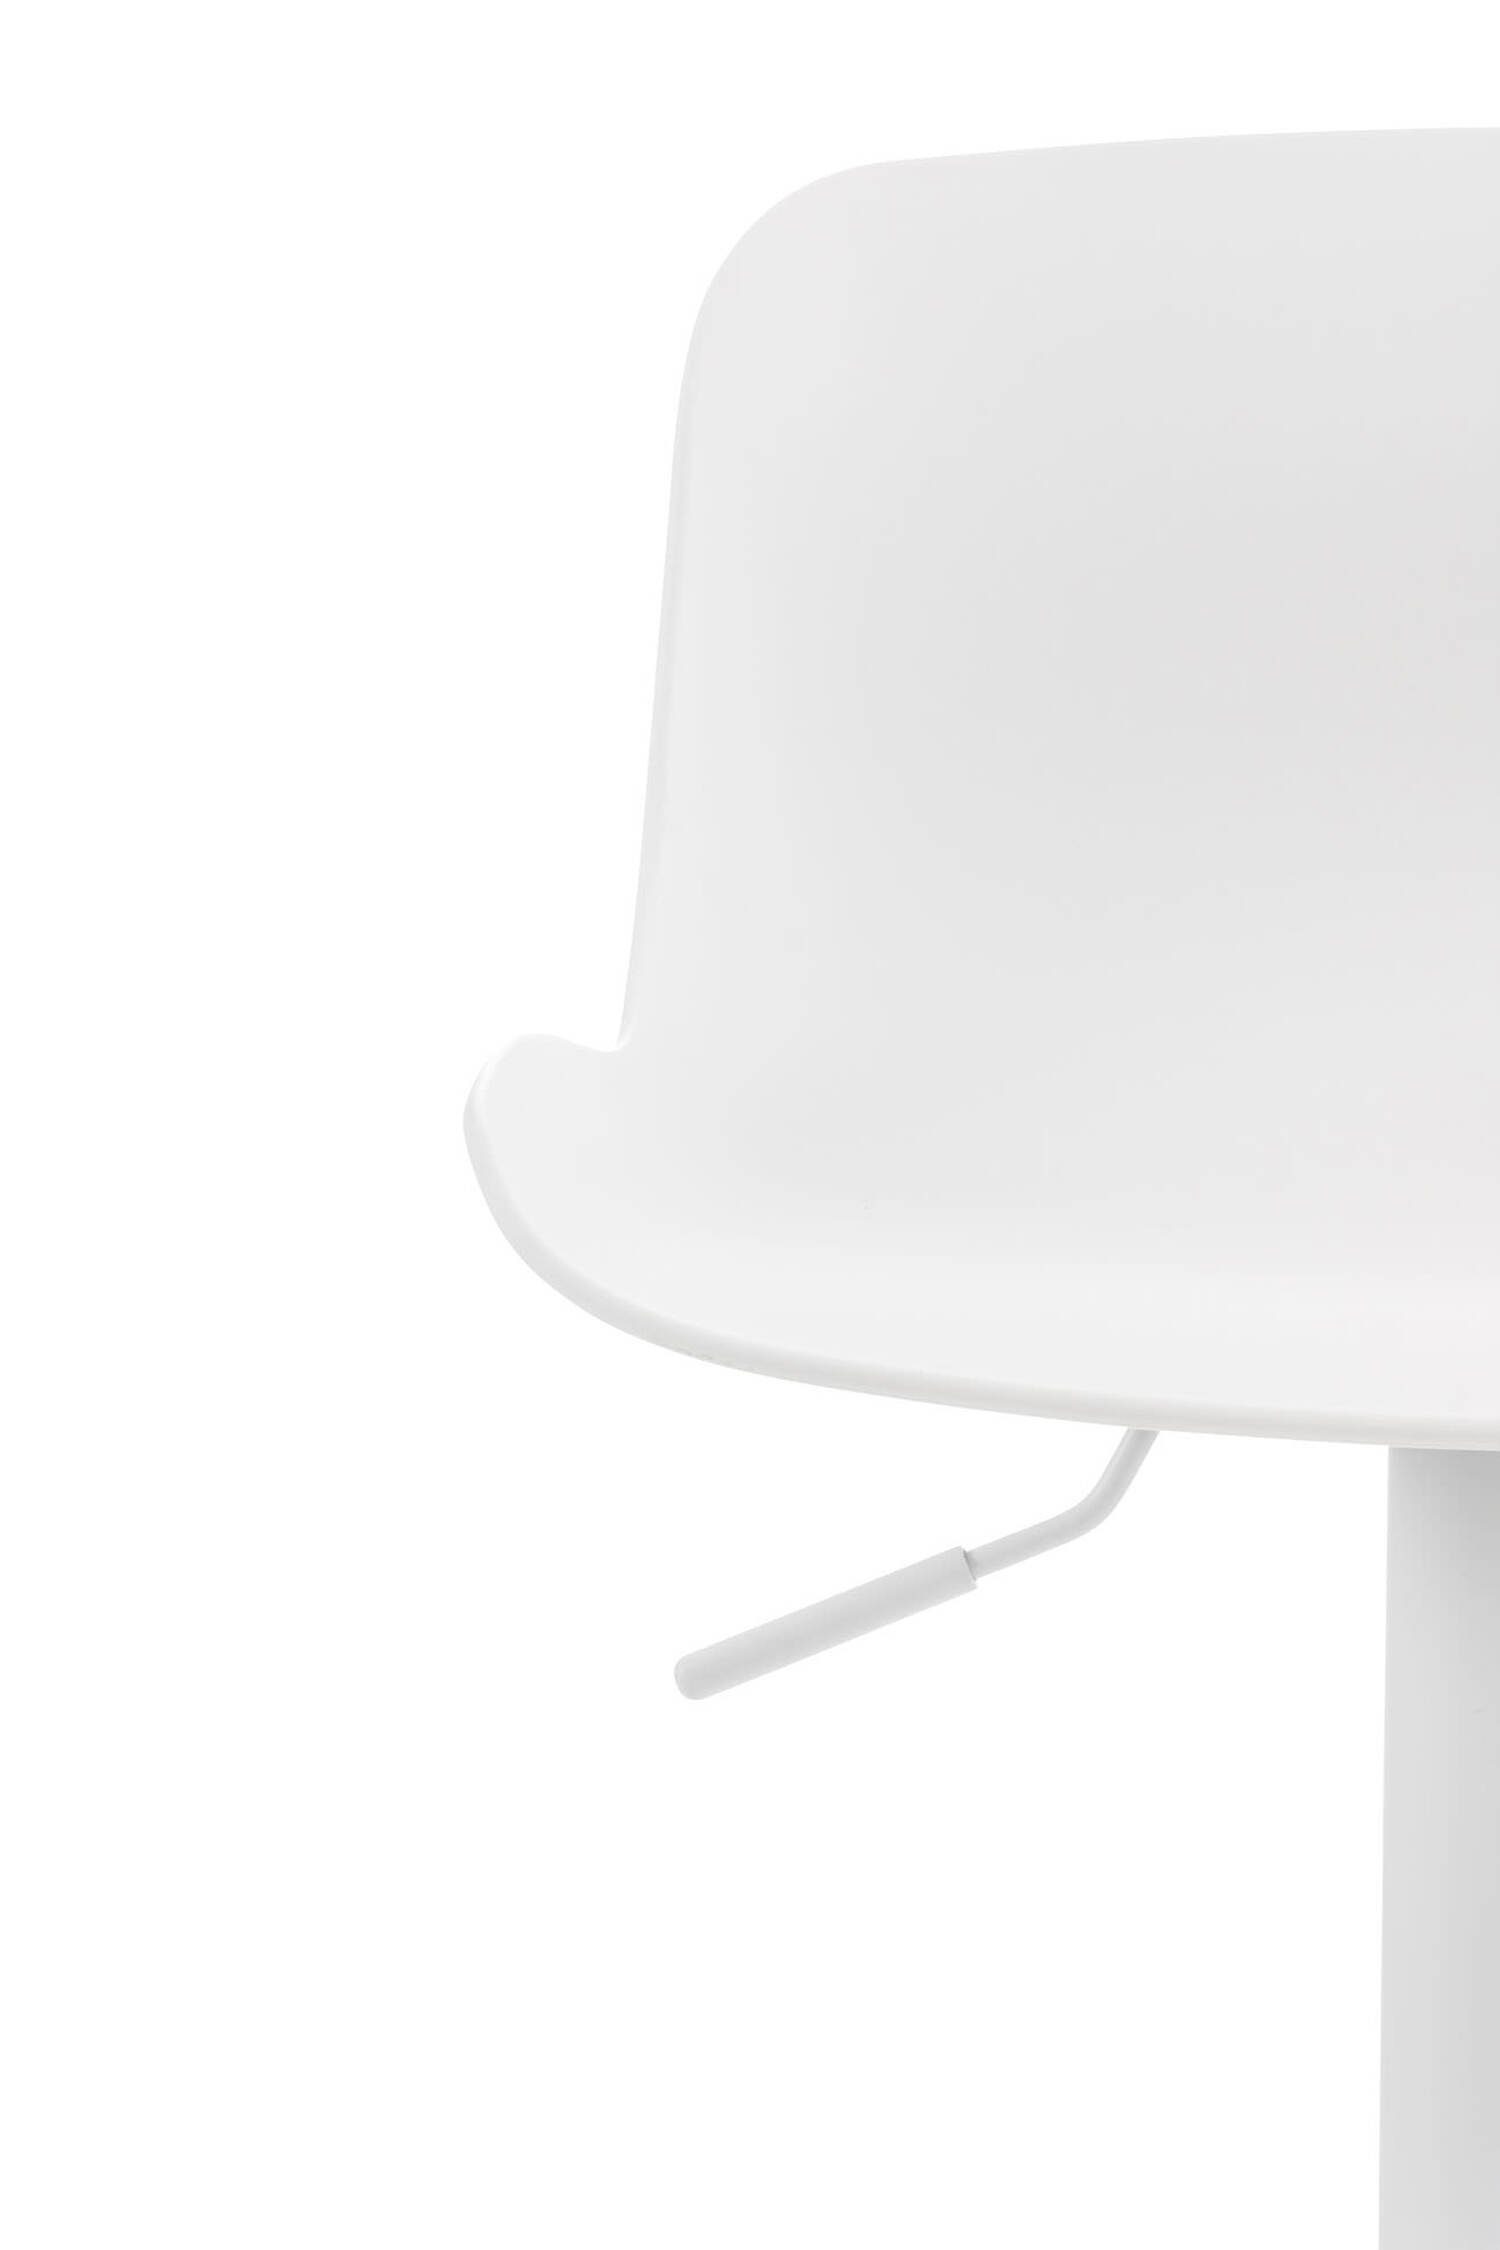 höhenverstellbar (Barstuhl Kunststoff und Barhocker TPFLiving & Rückenlehne und weiß drehbar), Küche Gestell Fußstütze Metall Weiß - mit - Theke Almeria Sitzfläche: bequemer angenehmer für Hocker